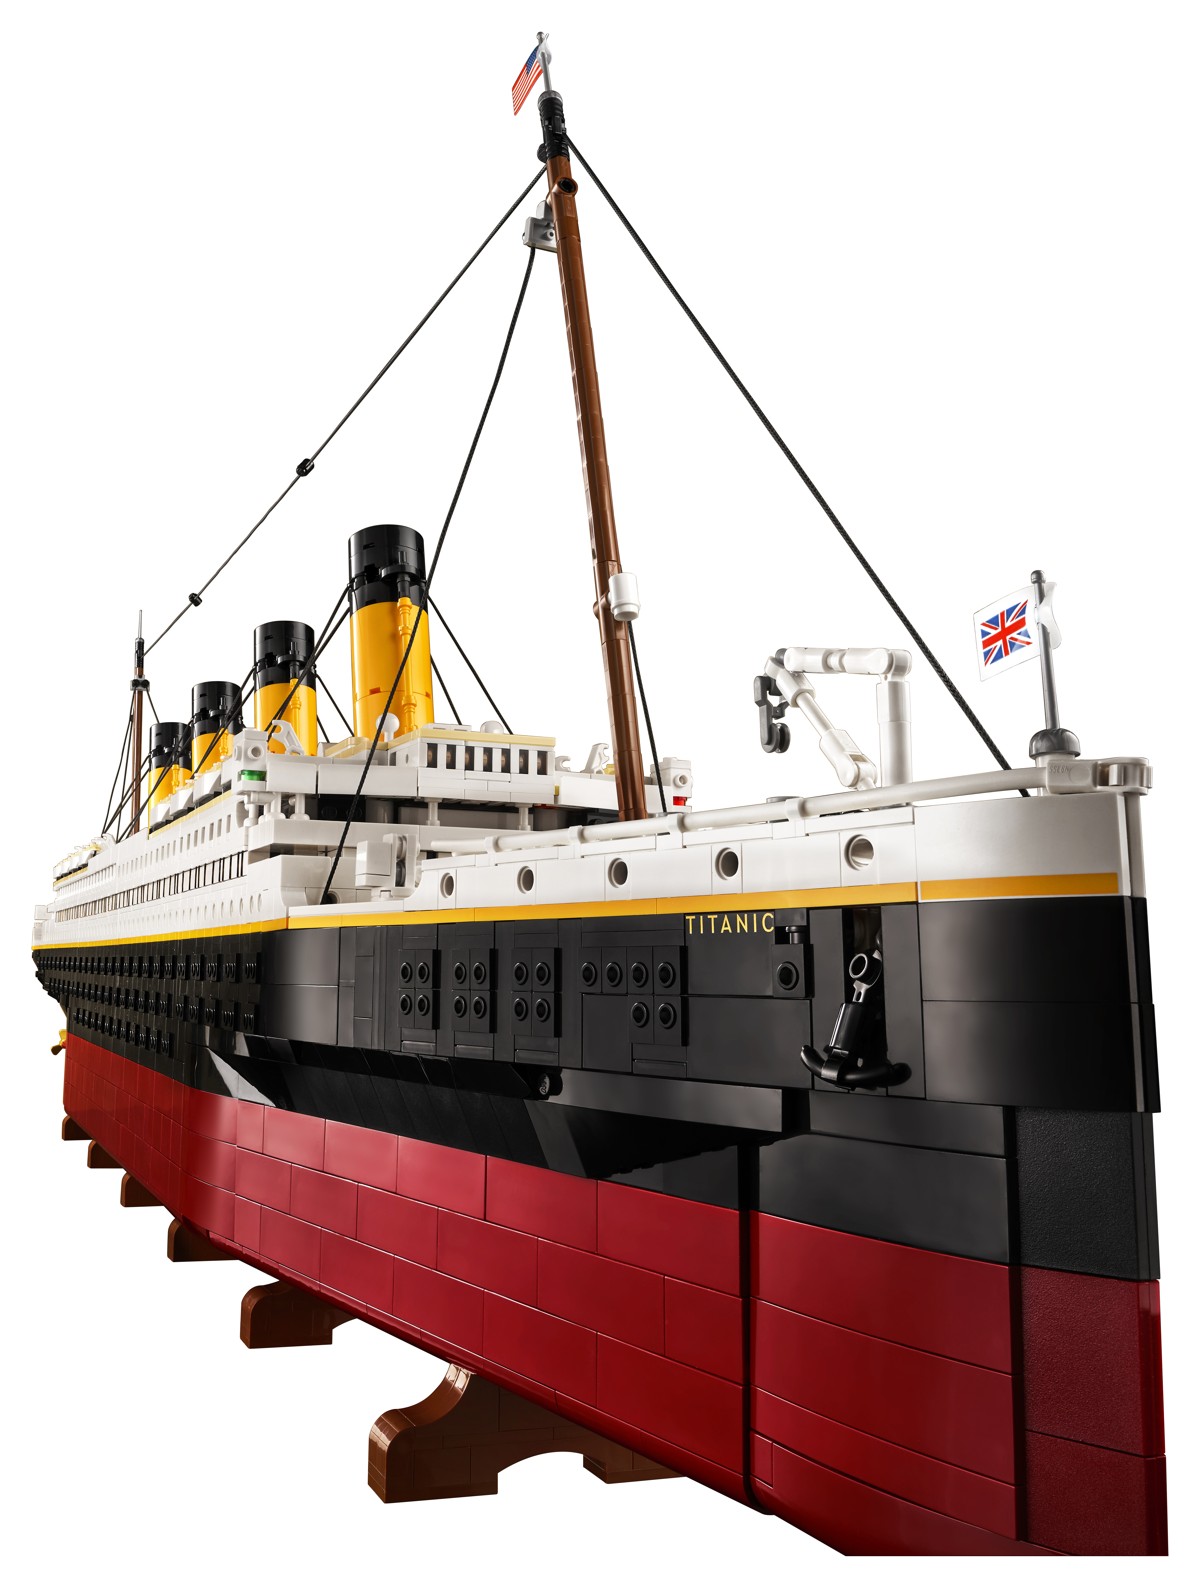 LEGO Titanic il Set più grande di sempre con 9000 Mattoncini (#10294) – (1)  –